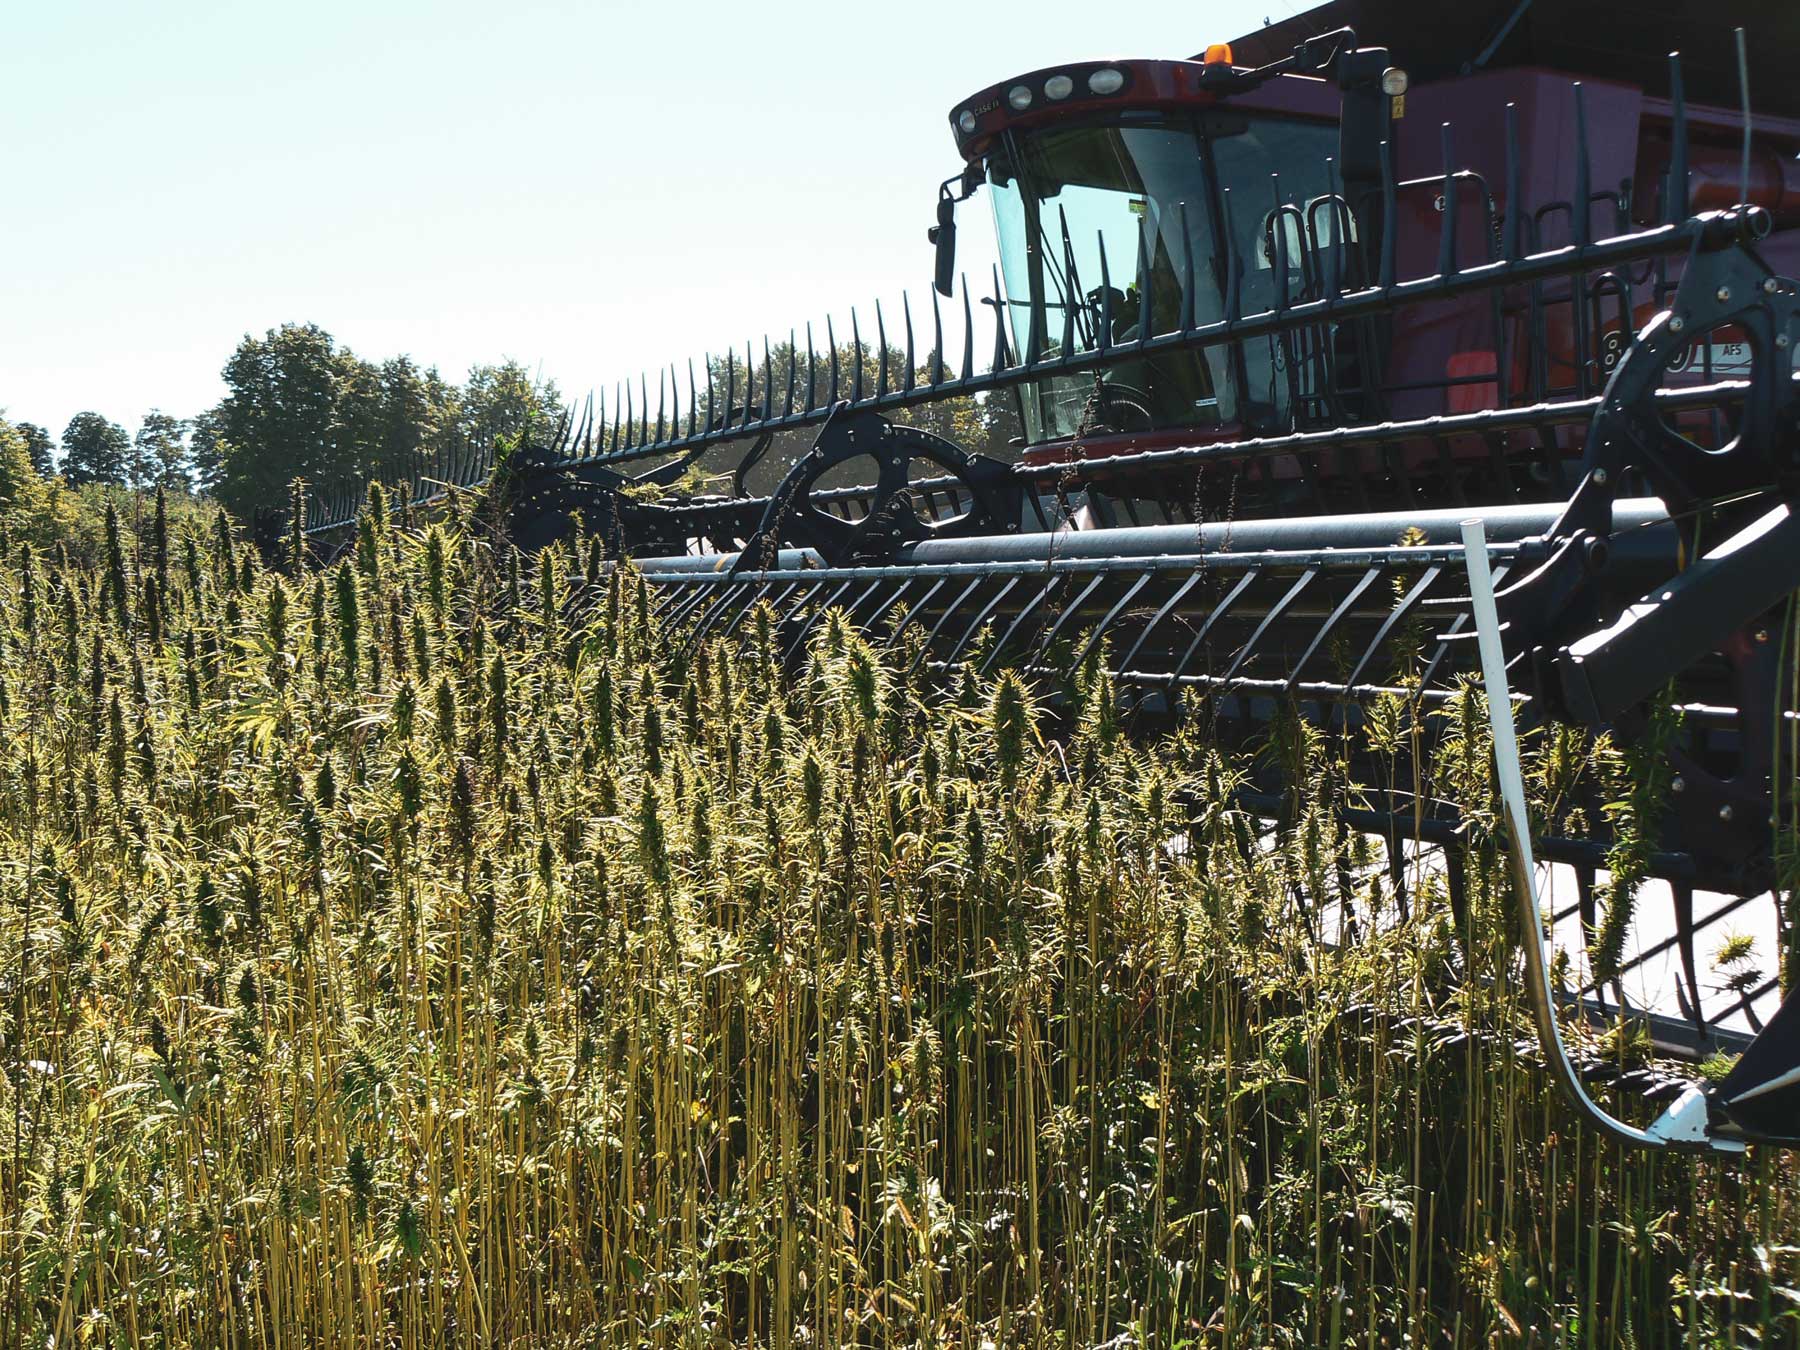 Hemp crops in Ontario Canada